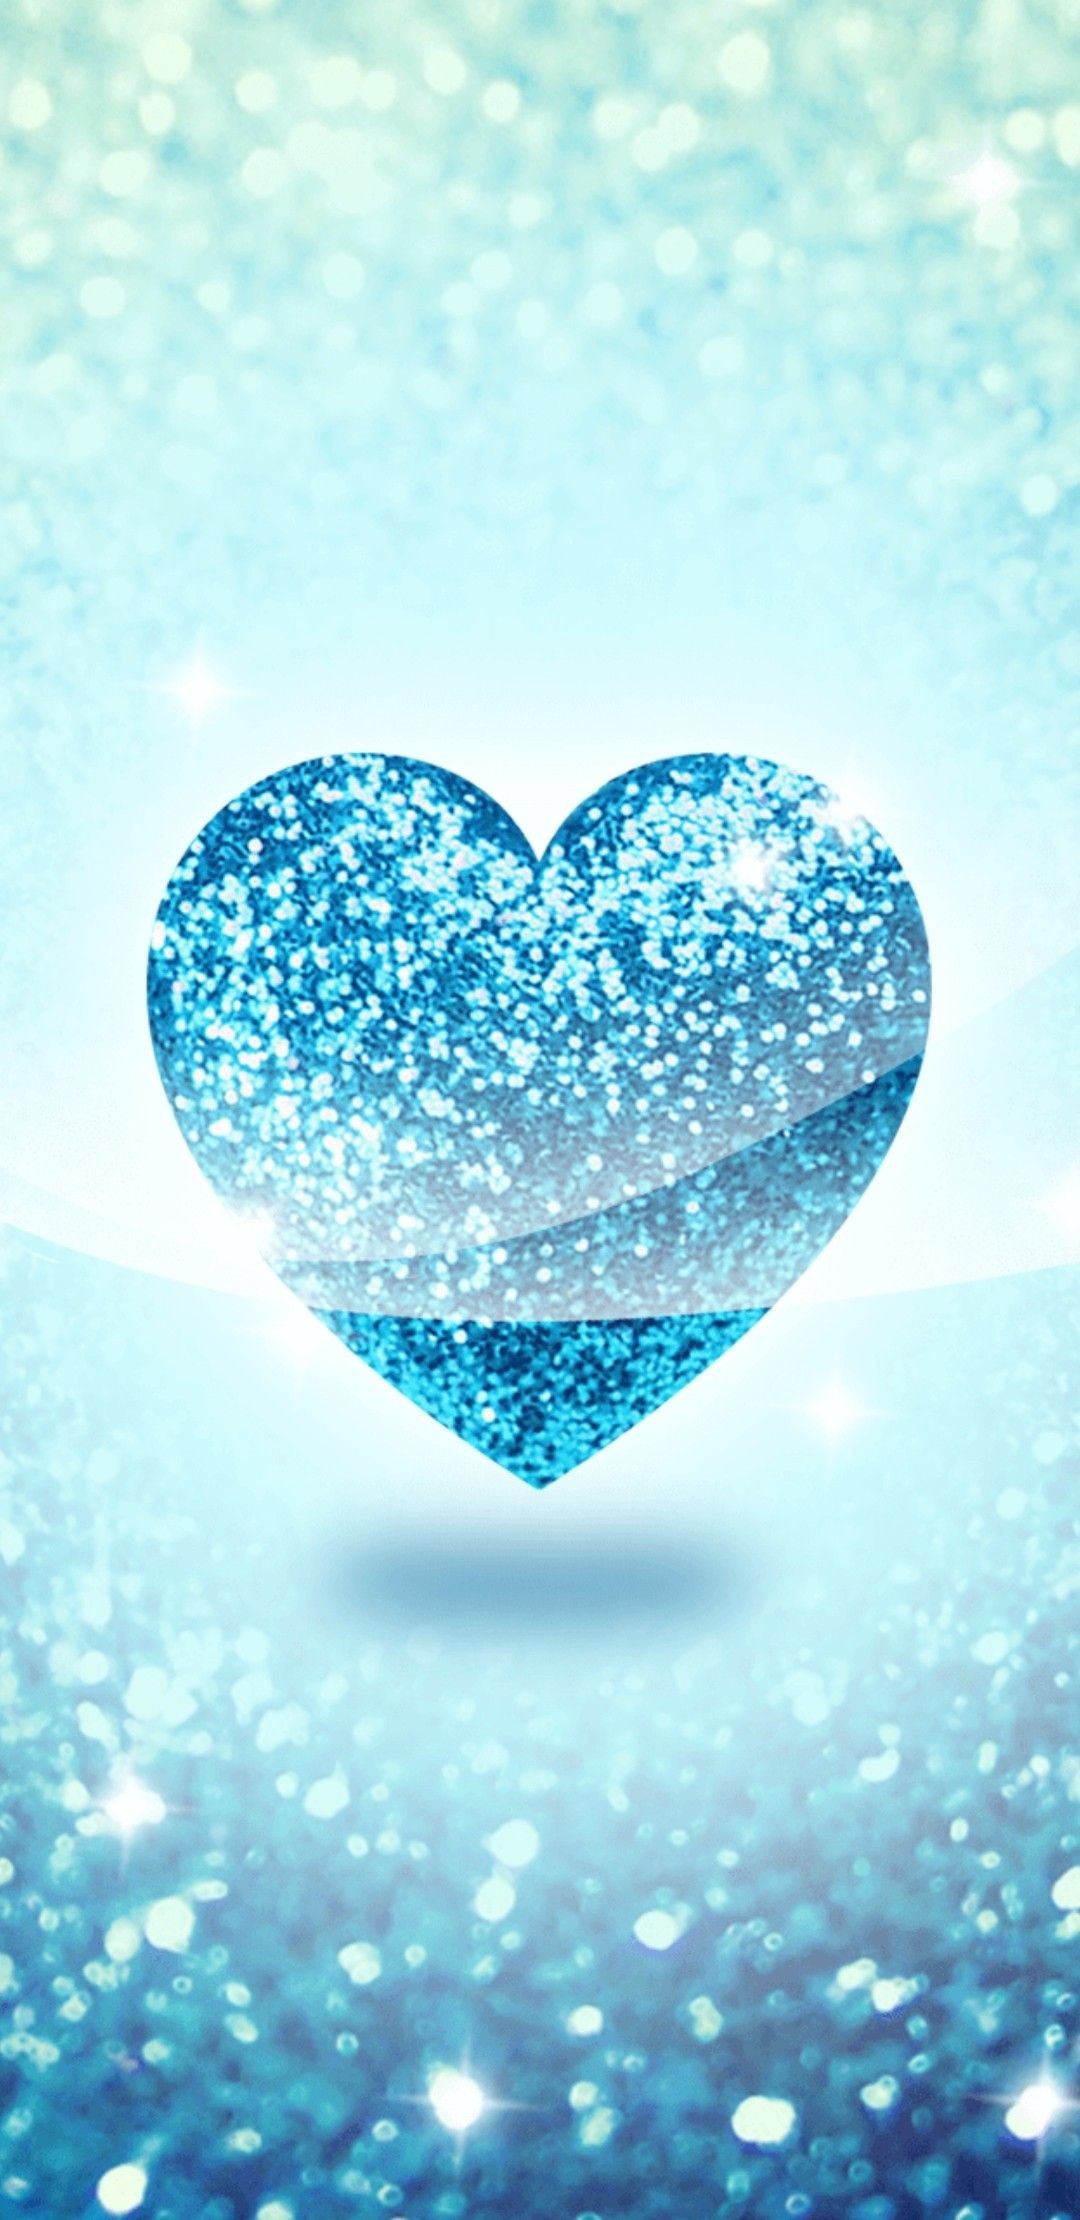 1080x2220 Blue heart wallpaper